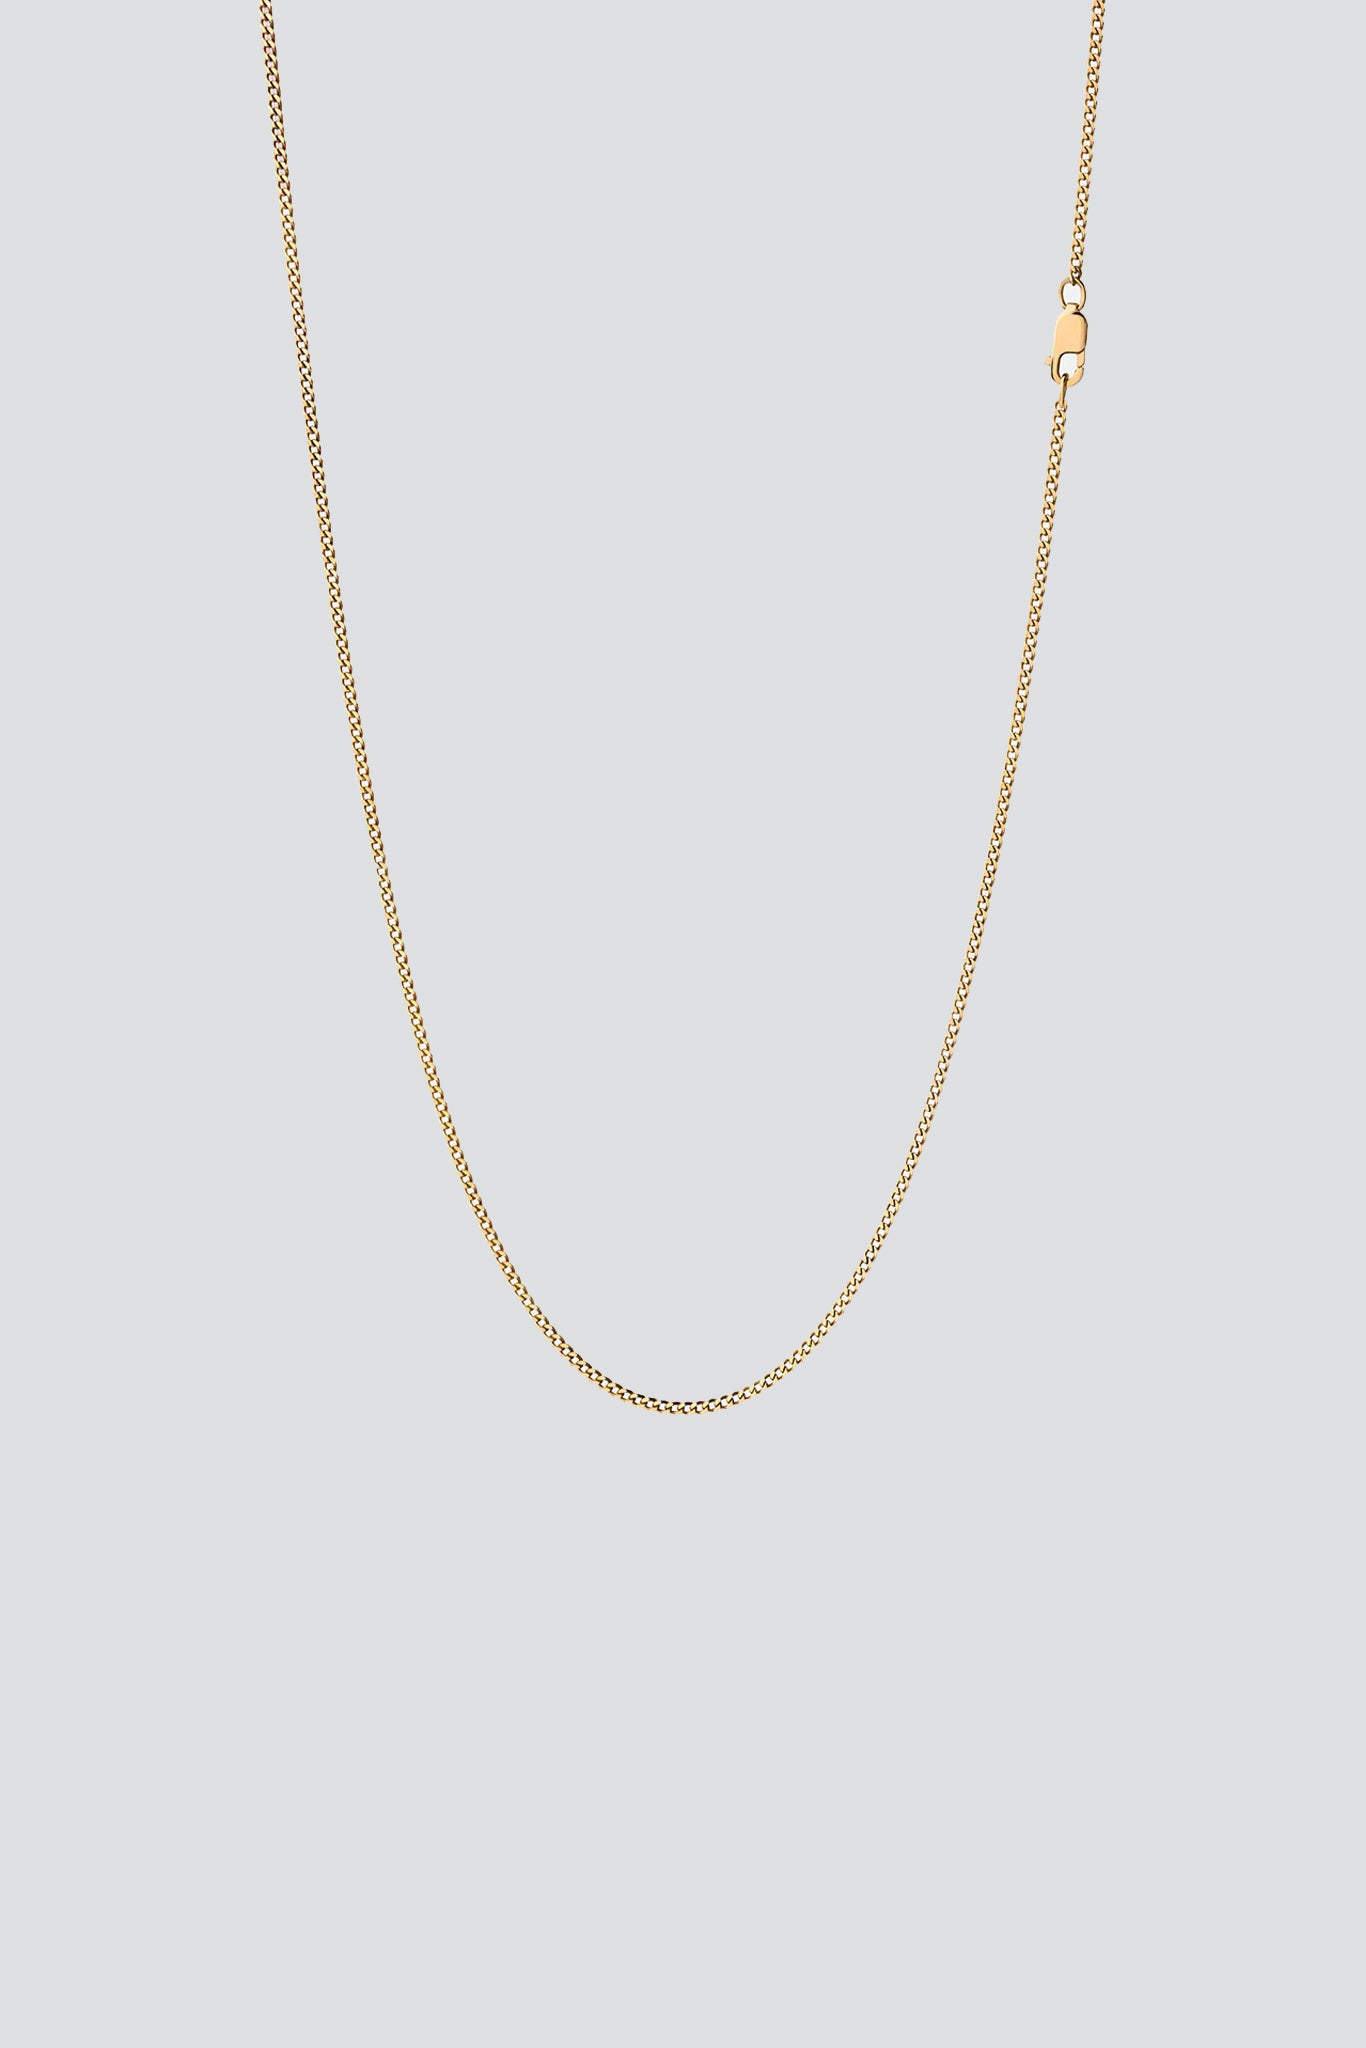 Gold Vermeil 1.3mm Cuban Chain Necklace